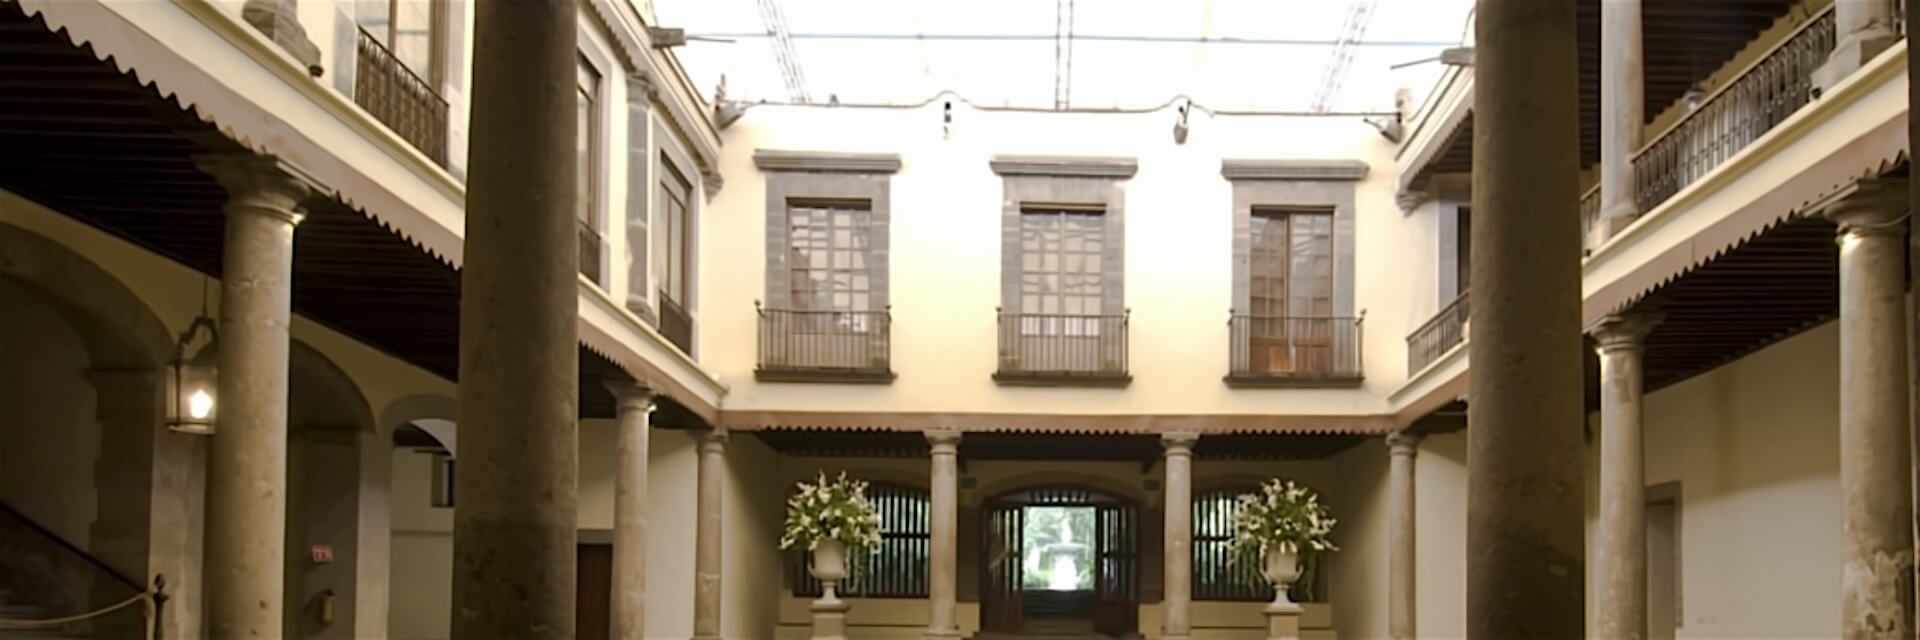 Patio Central Museo Casa de la Bola